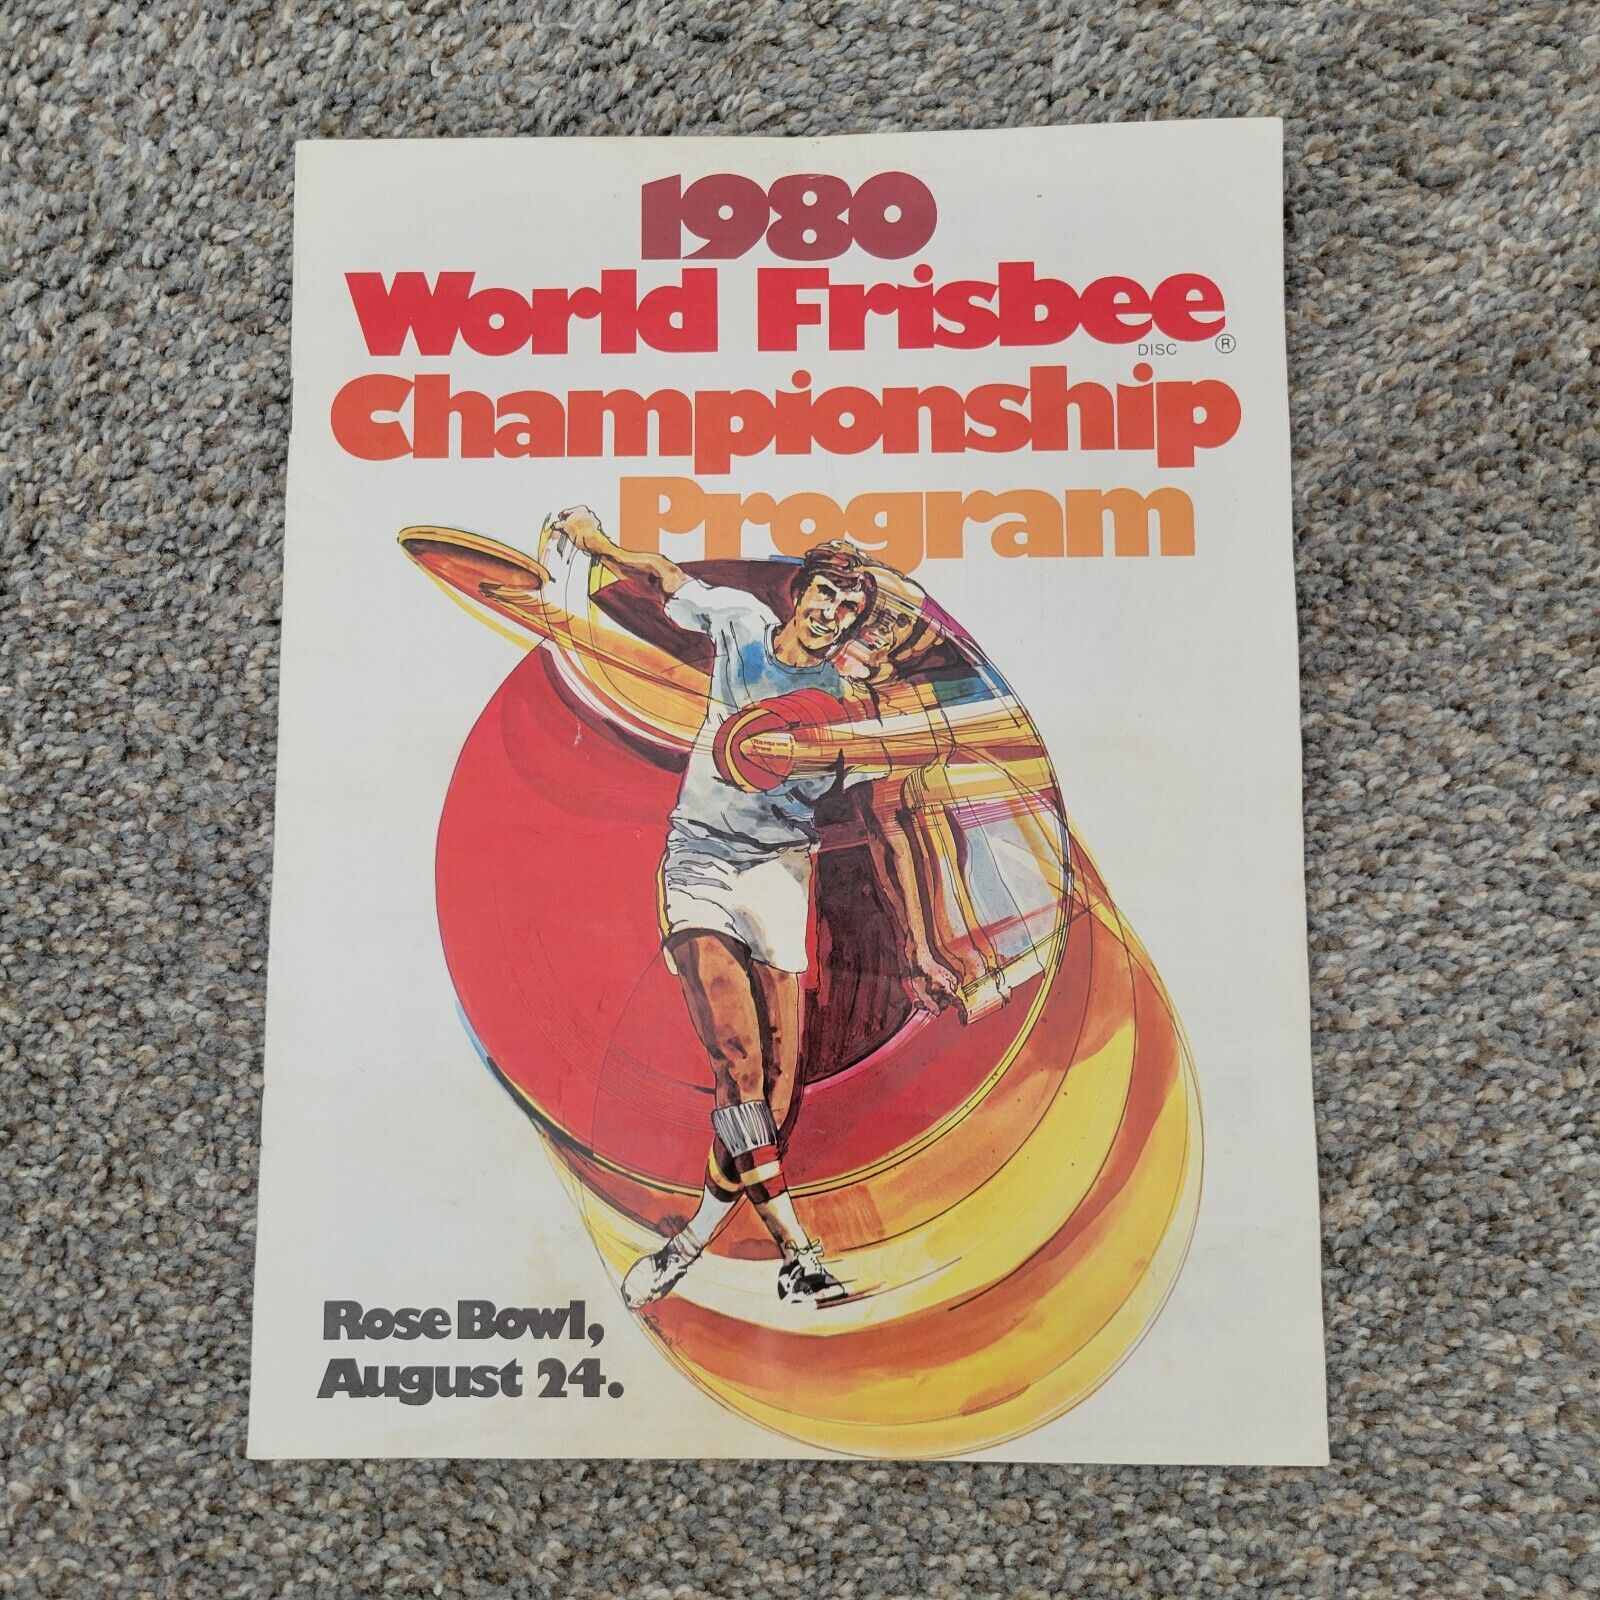 Wham O 1980 World Frisbee Championships Program Rose Bowl 